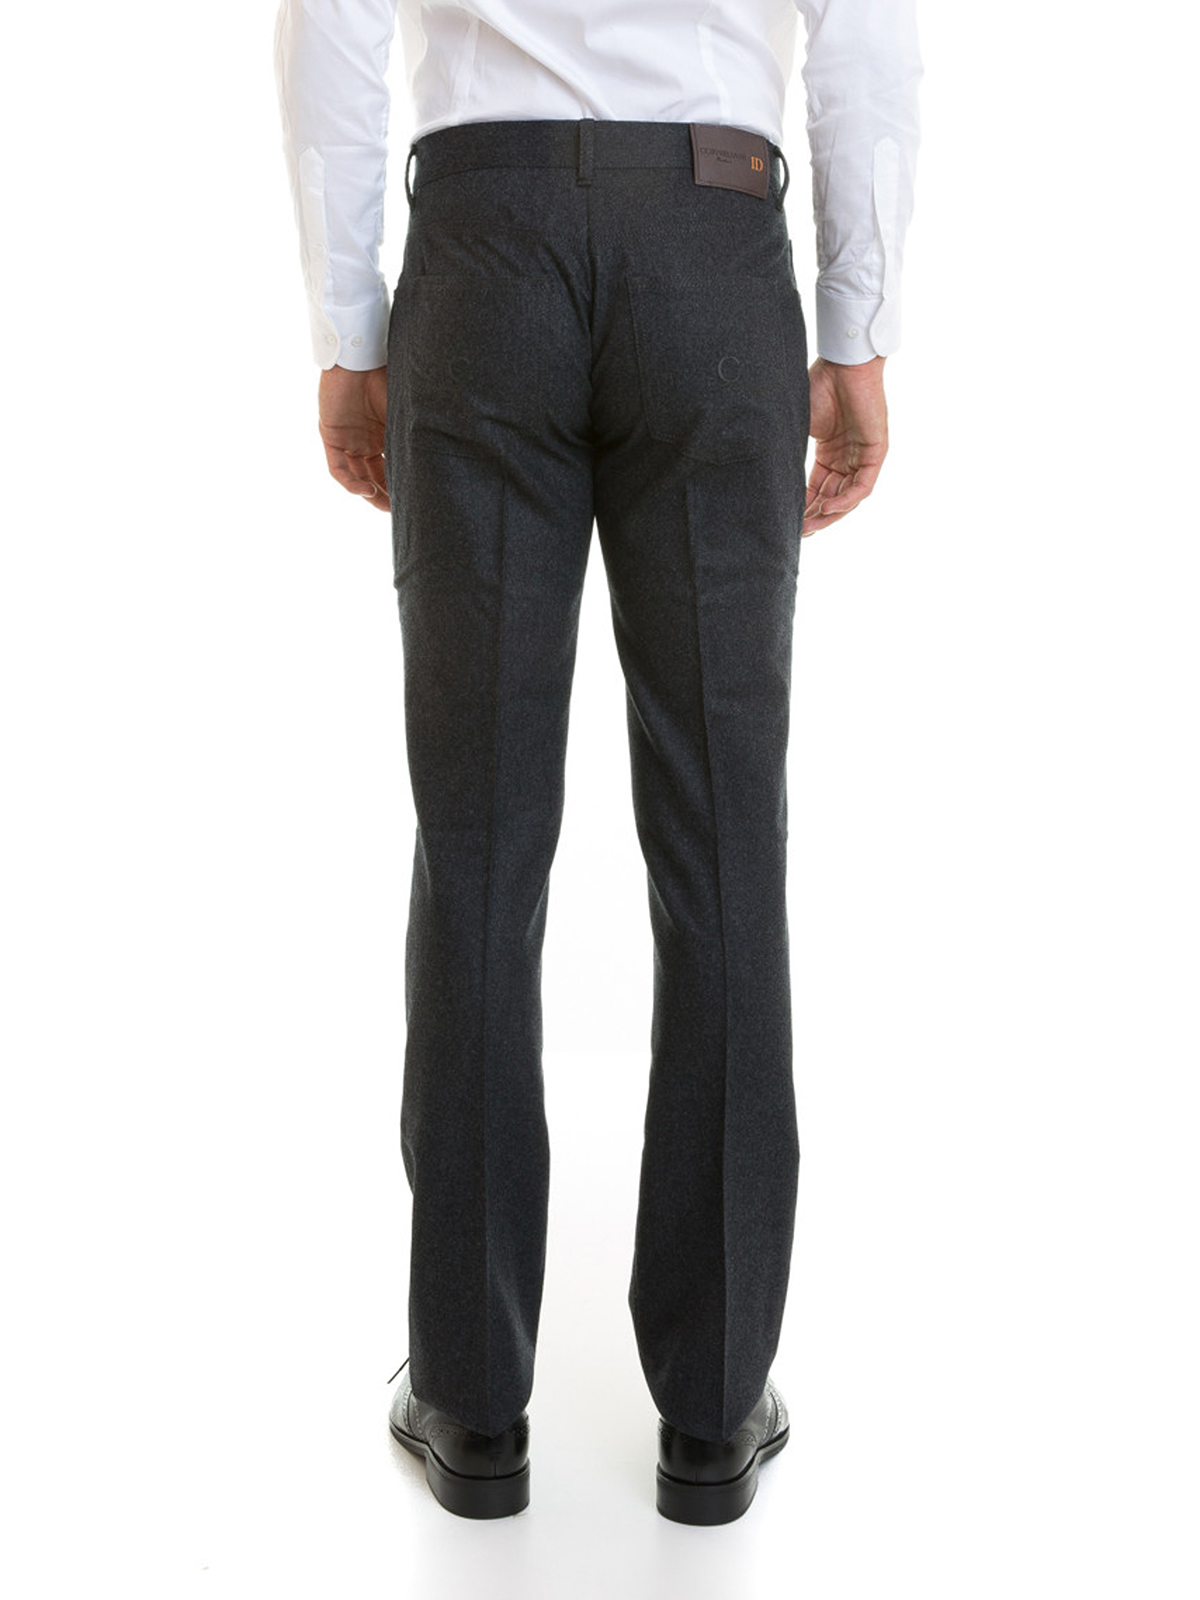 Geld rubber druk Lelie Casual trousers Corneliani - Wool jeans-style trousers - 6810152017814JK300